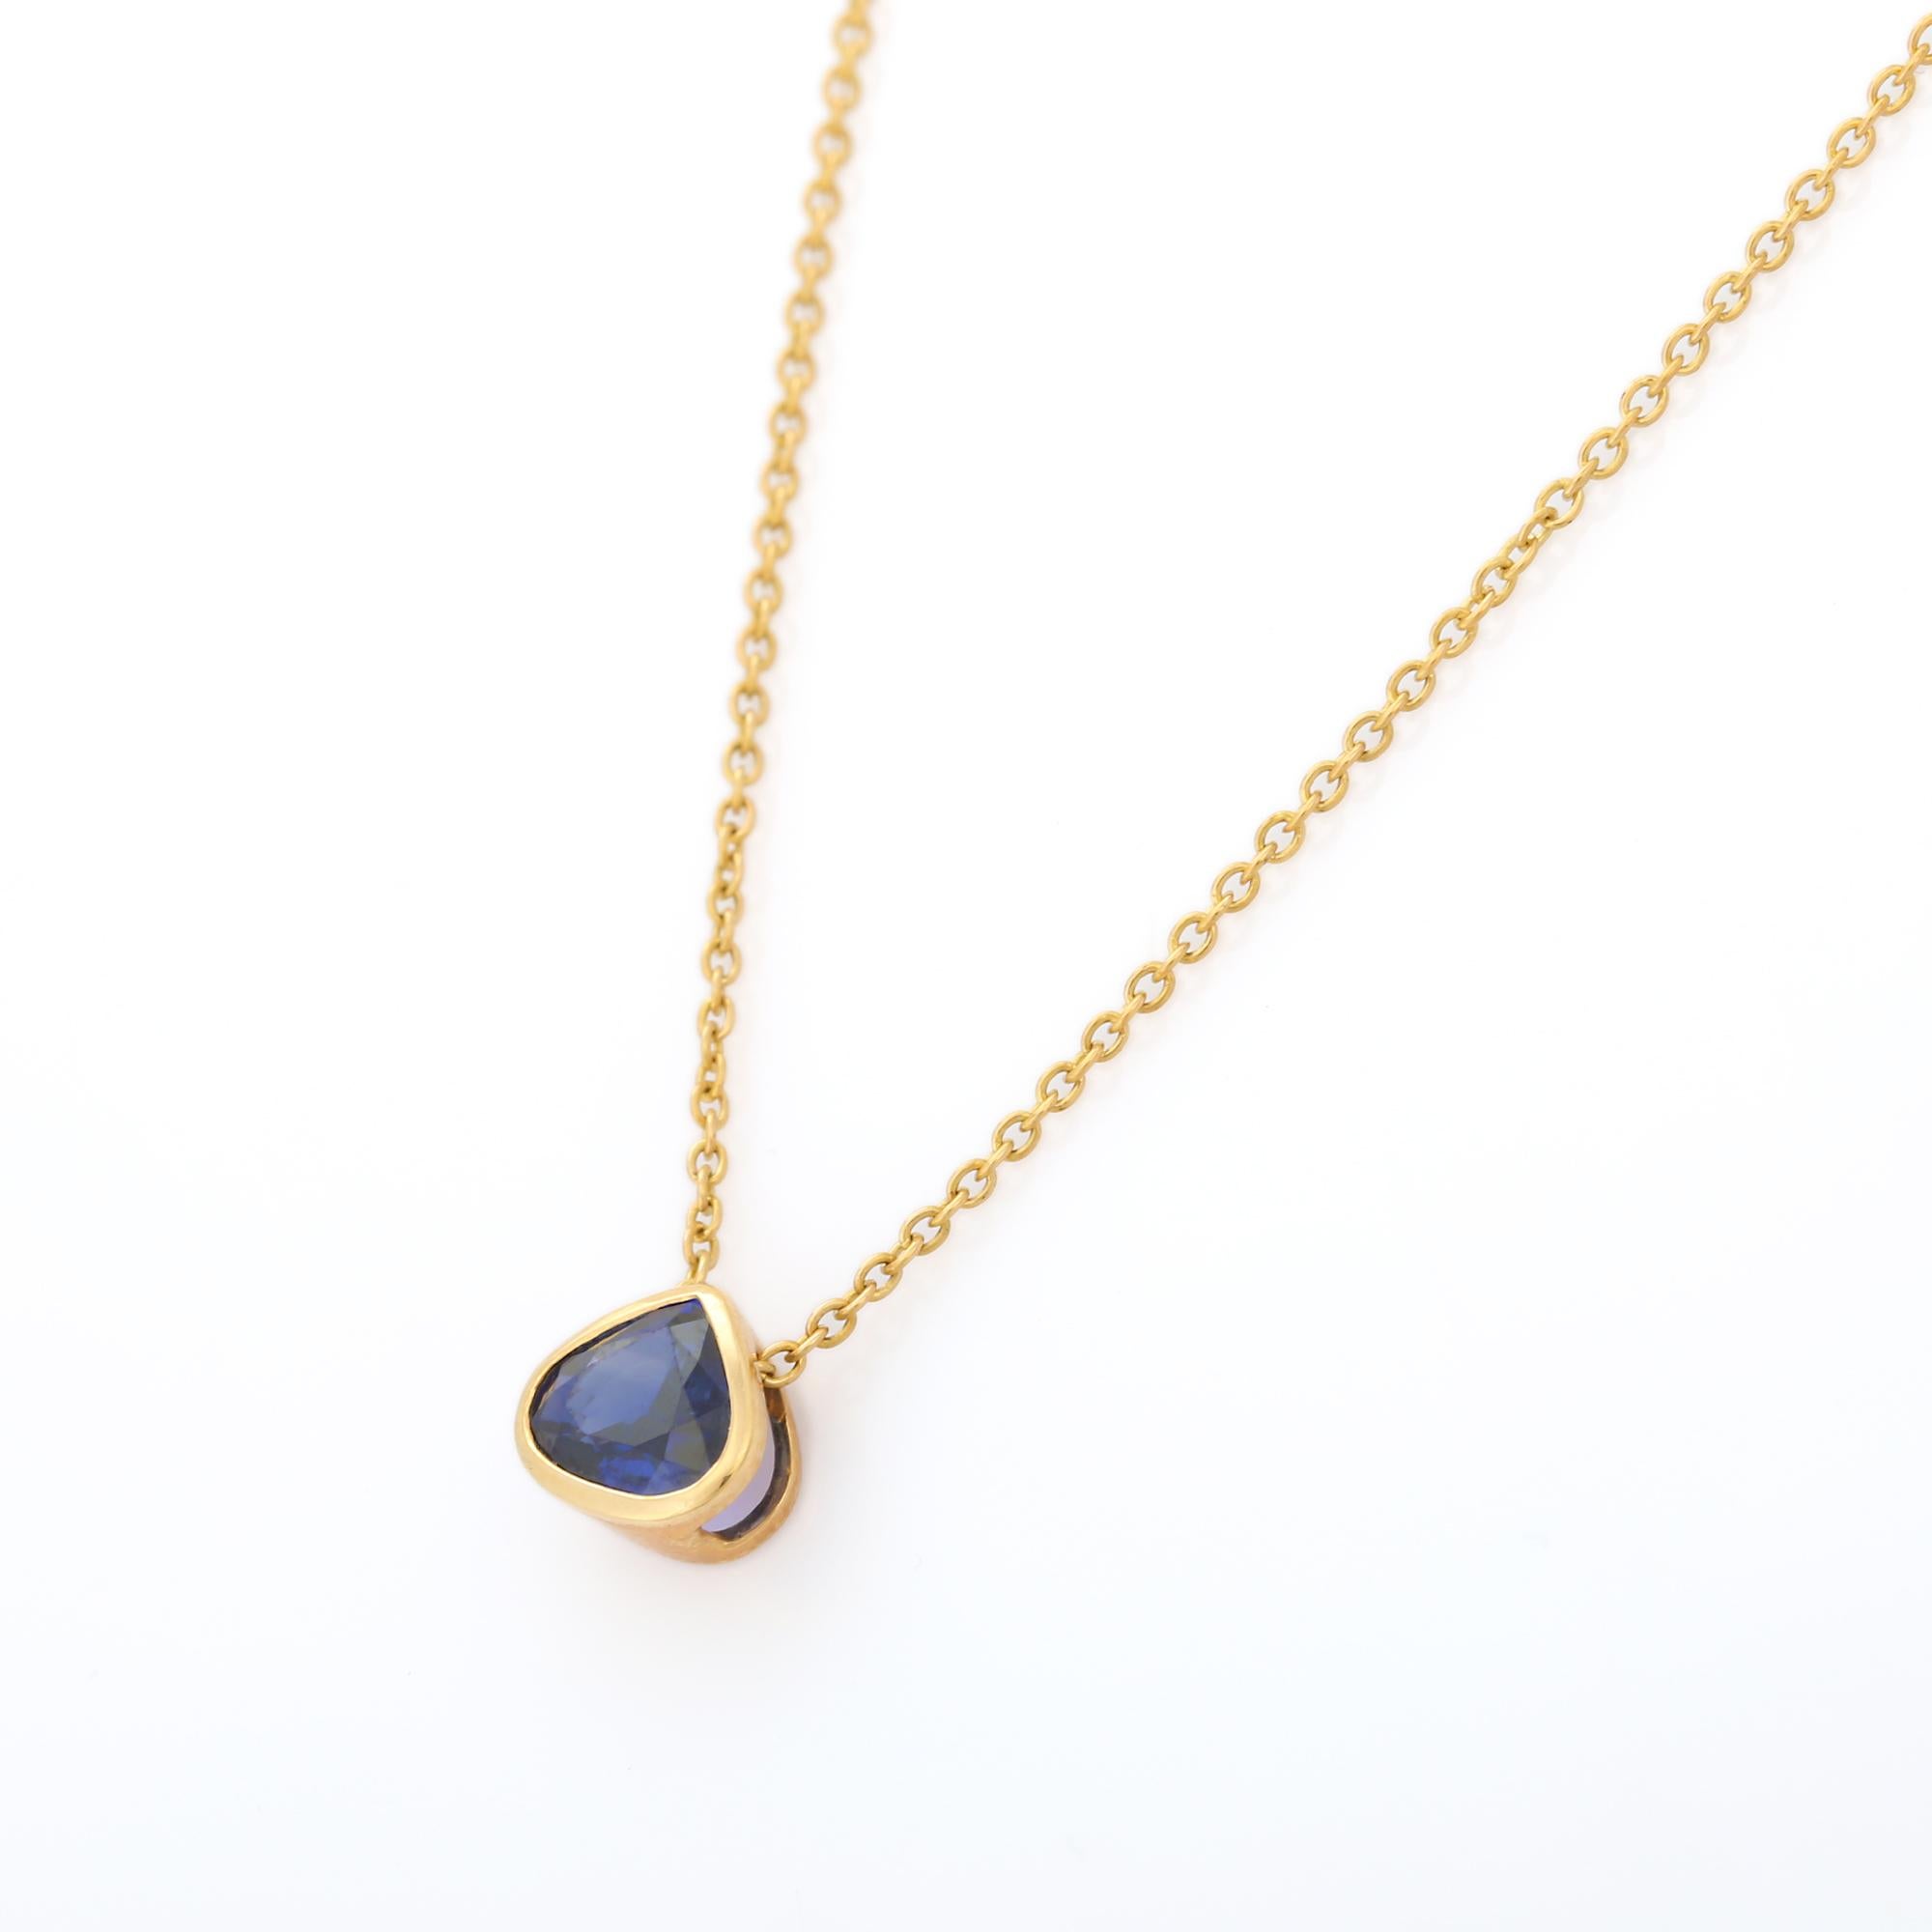 Blaue Saphir-Halskette aus 18 Karat Gold, besetzt mit Saphiren im Birnenschliff.
Ergänzen Sie Ihren Look mit dieser eleganten Saphir-Halskette. Dieses atemberaubende Schmuckstück wertet einen Freizeitlook oder ein elegantes Outfit sofort auf. Bequem